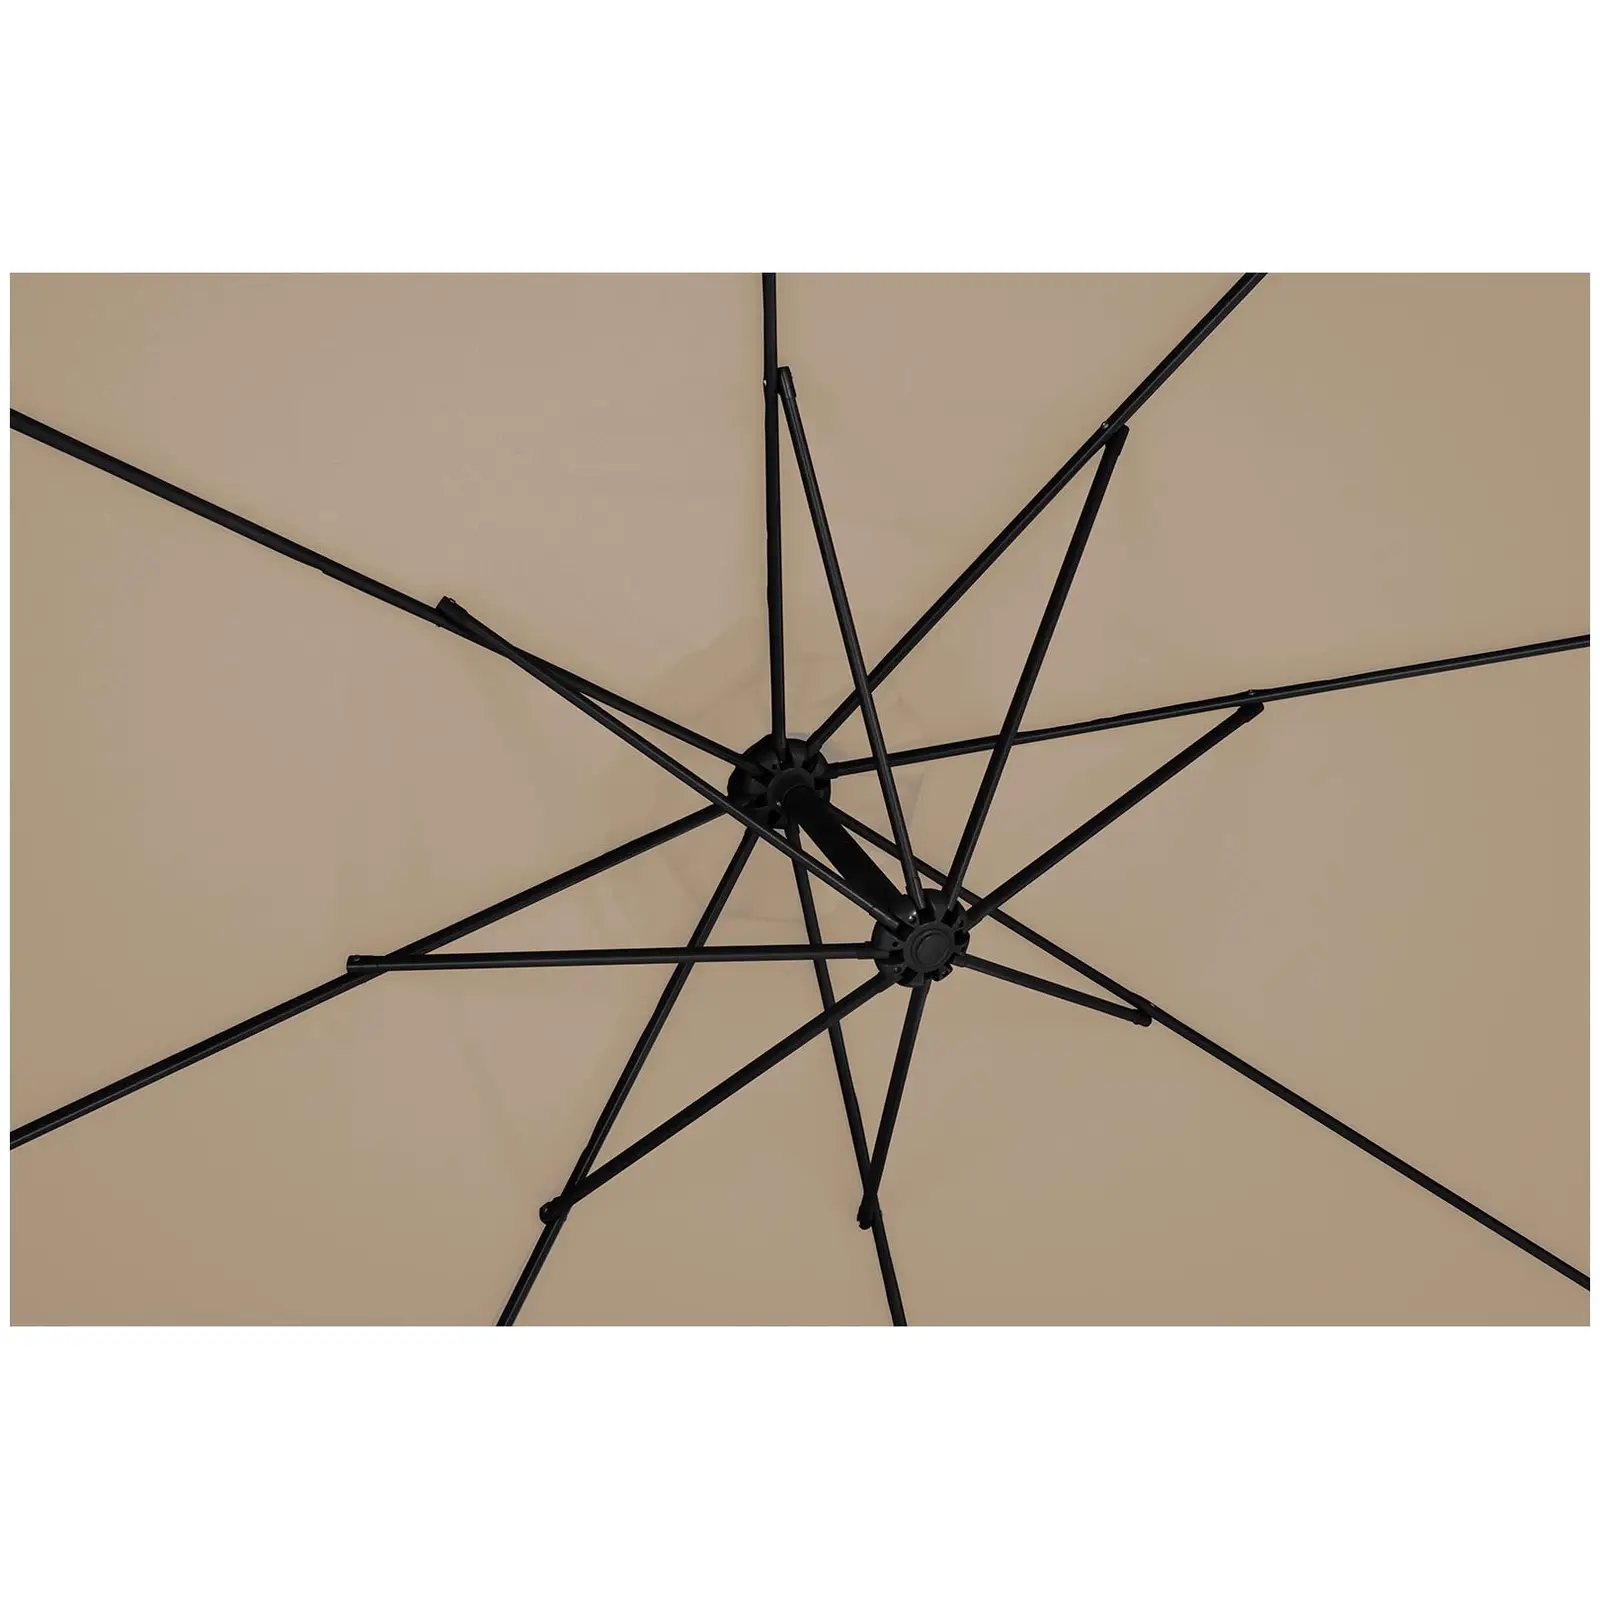 Висящ чадър - сив цвят - кръгъл - Ø 300 см - с възможност за накланяне